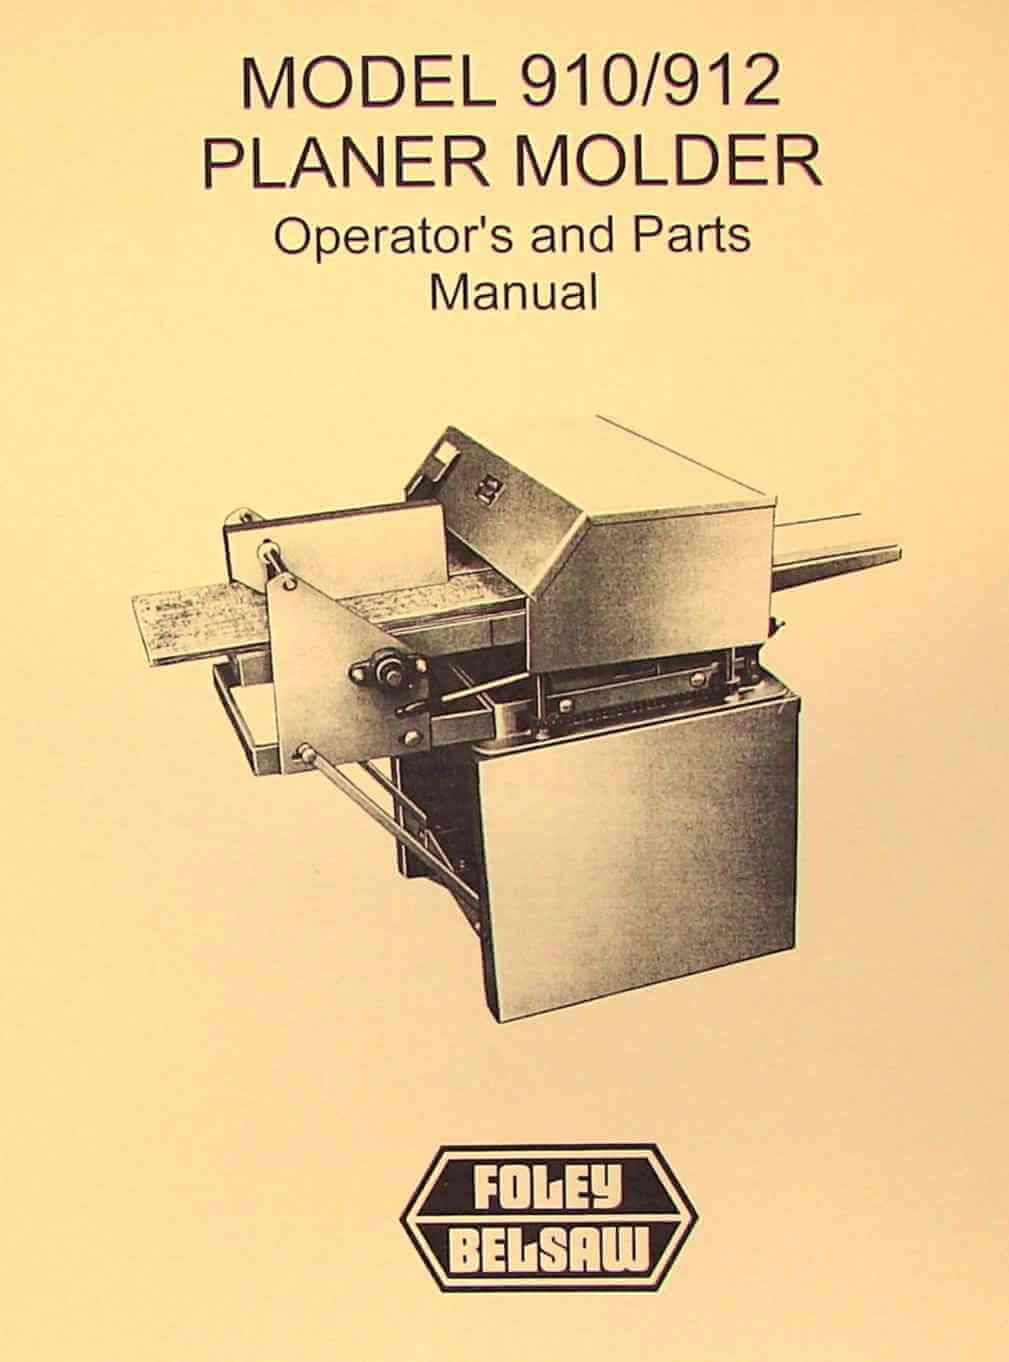 Cincinnati 16" Shaper Parts List  Manual  *387 